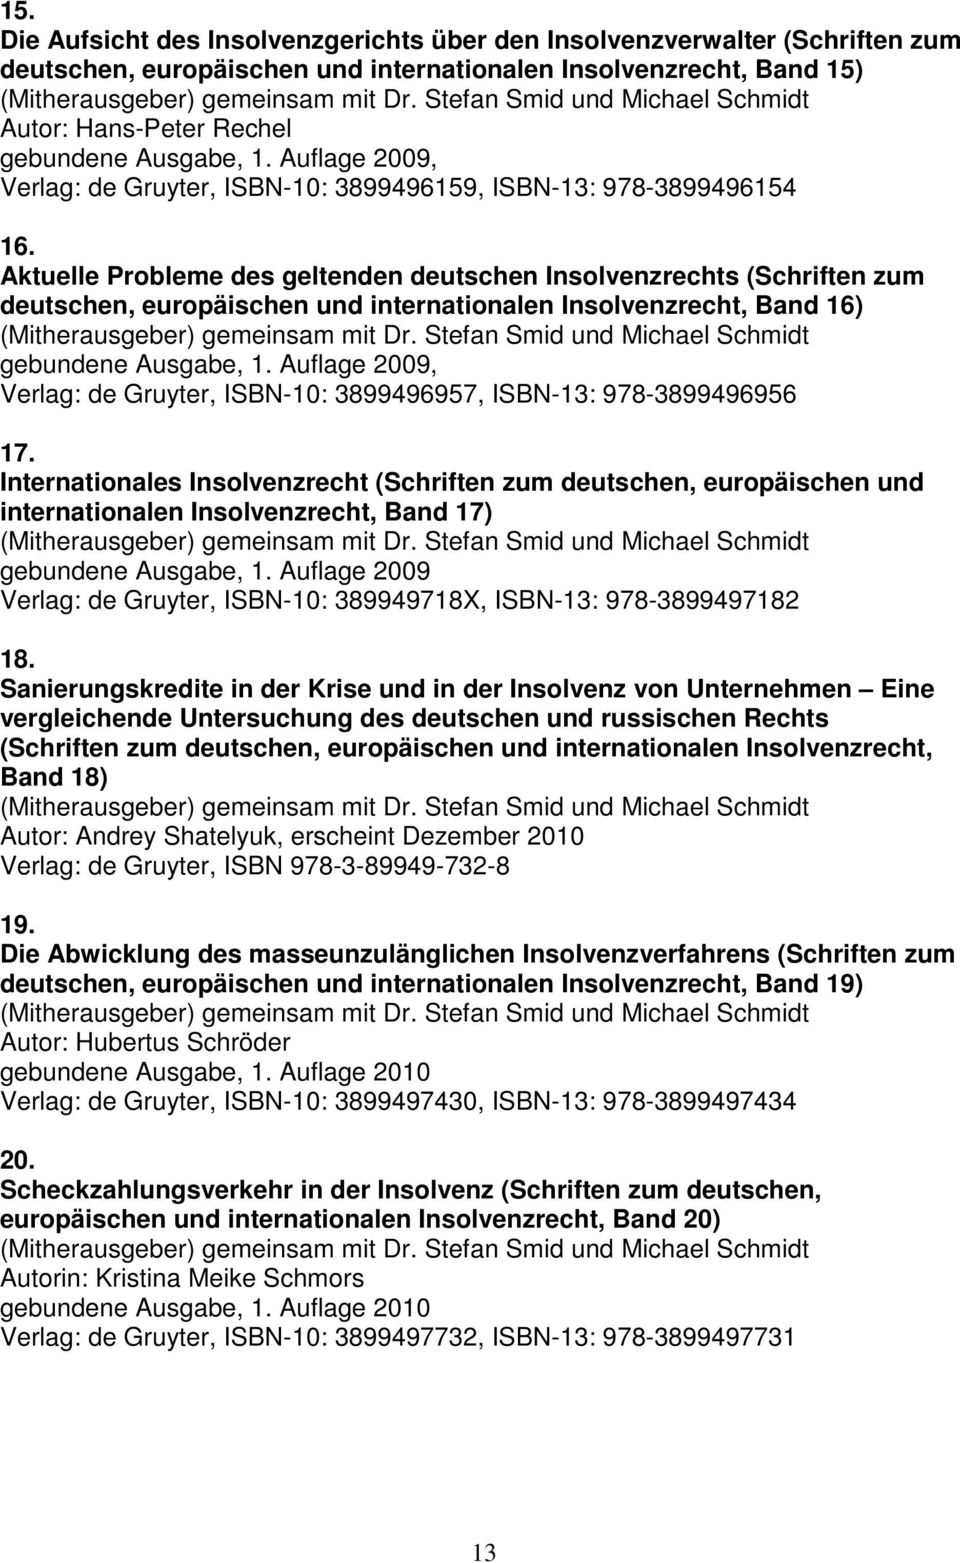 Aktuelle Probleme des geltenden deutschen Insolvenzrechts (Schriften zum deutschen, europäischen und internationalen Insolvenzrecht, Band 16) gebundene Ausgabe, 1.